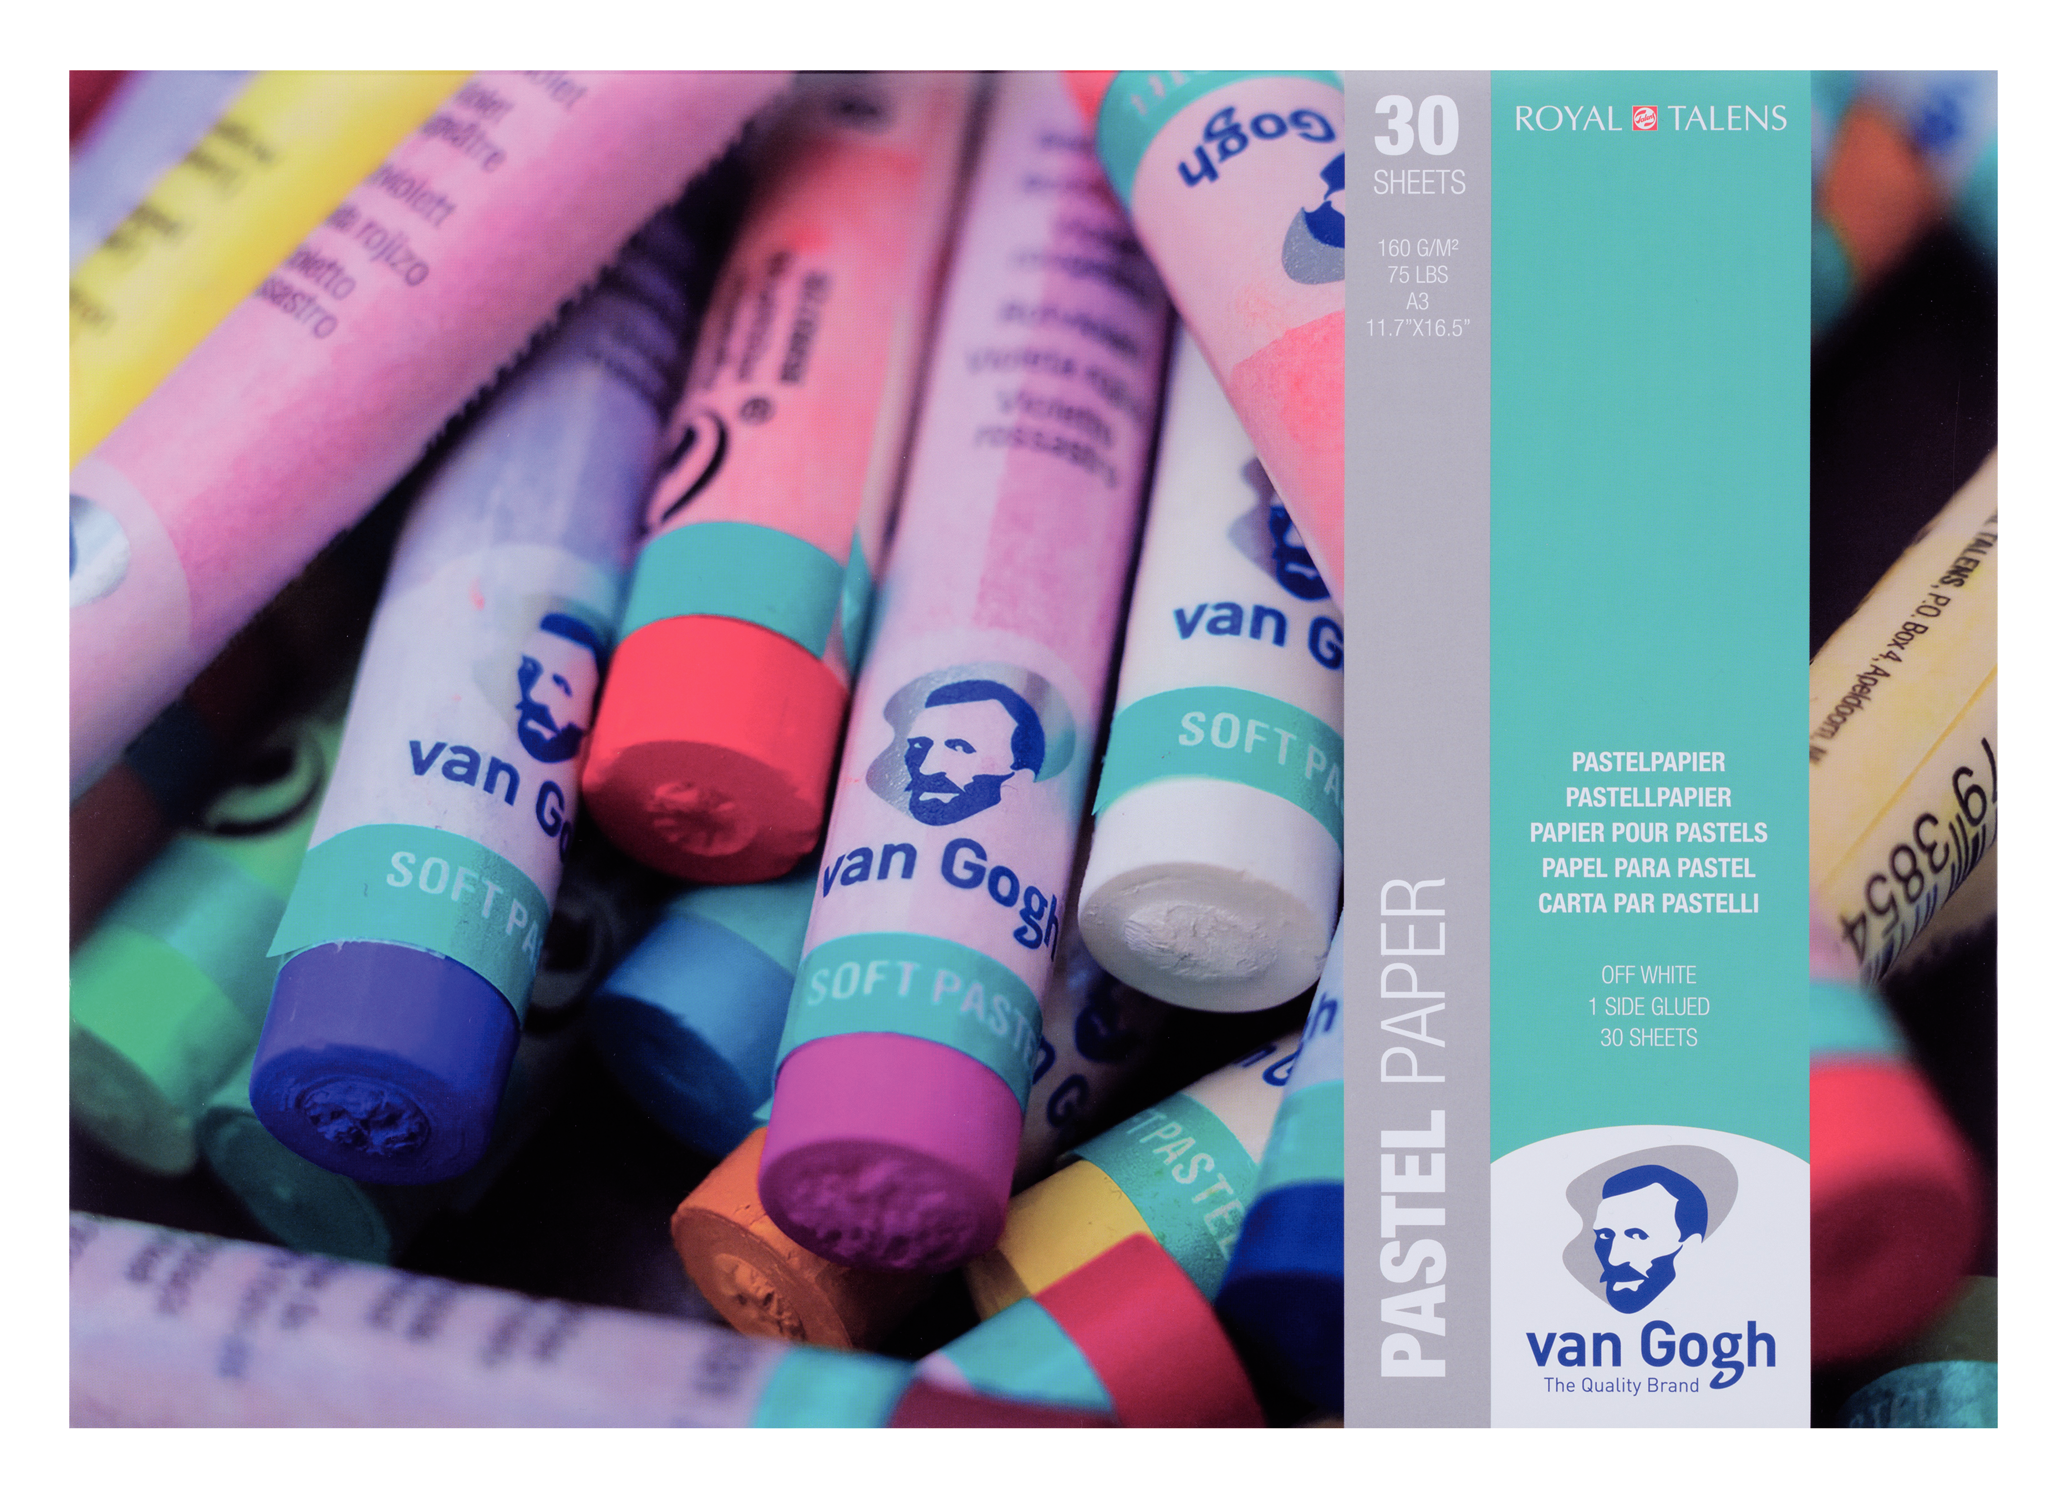 ROYAL TALENS Альбомы "Van Gogh" для пастели